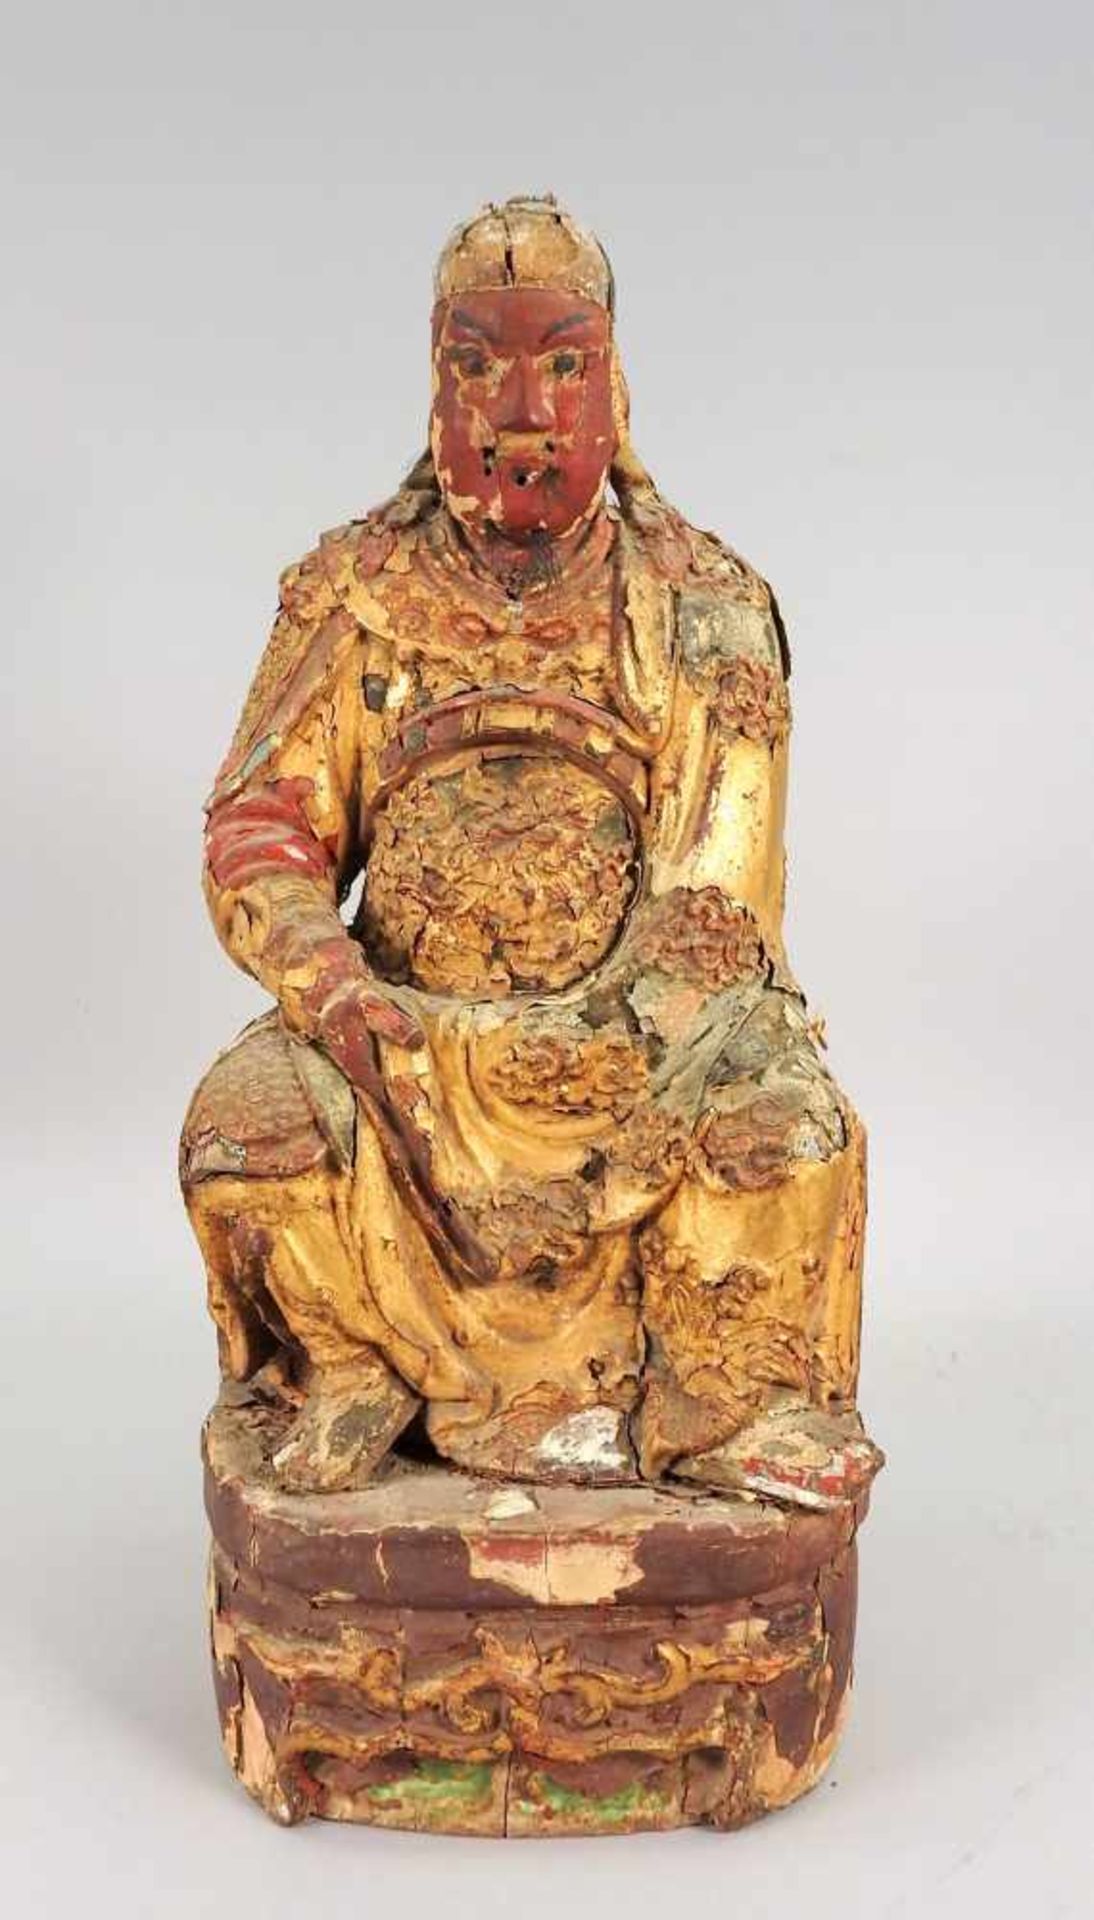 Chinesische KaiserfigurHolzgeschnitzt, polychrom bemalt. Thronender Kaiser mit rot-gold-farbener